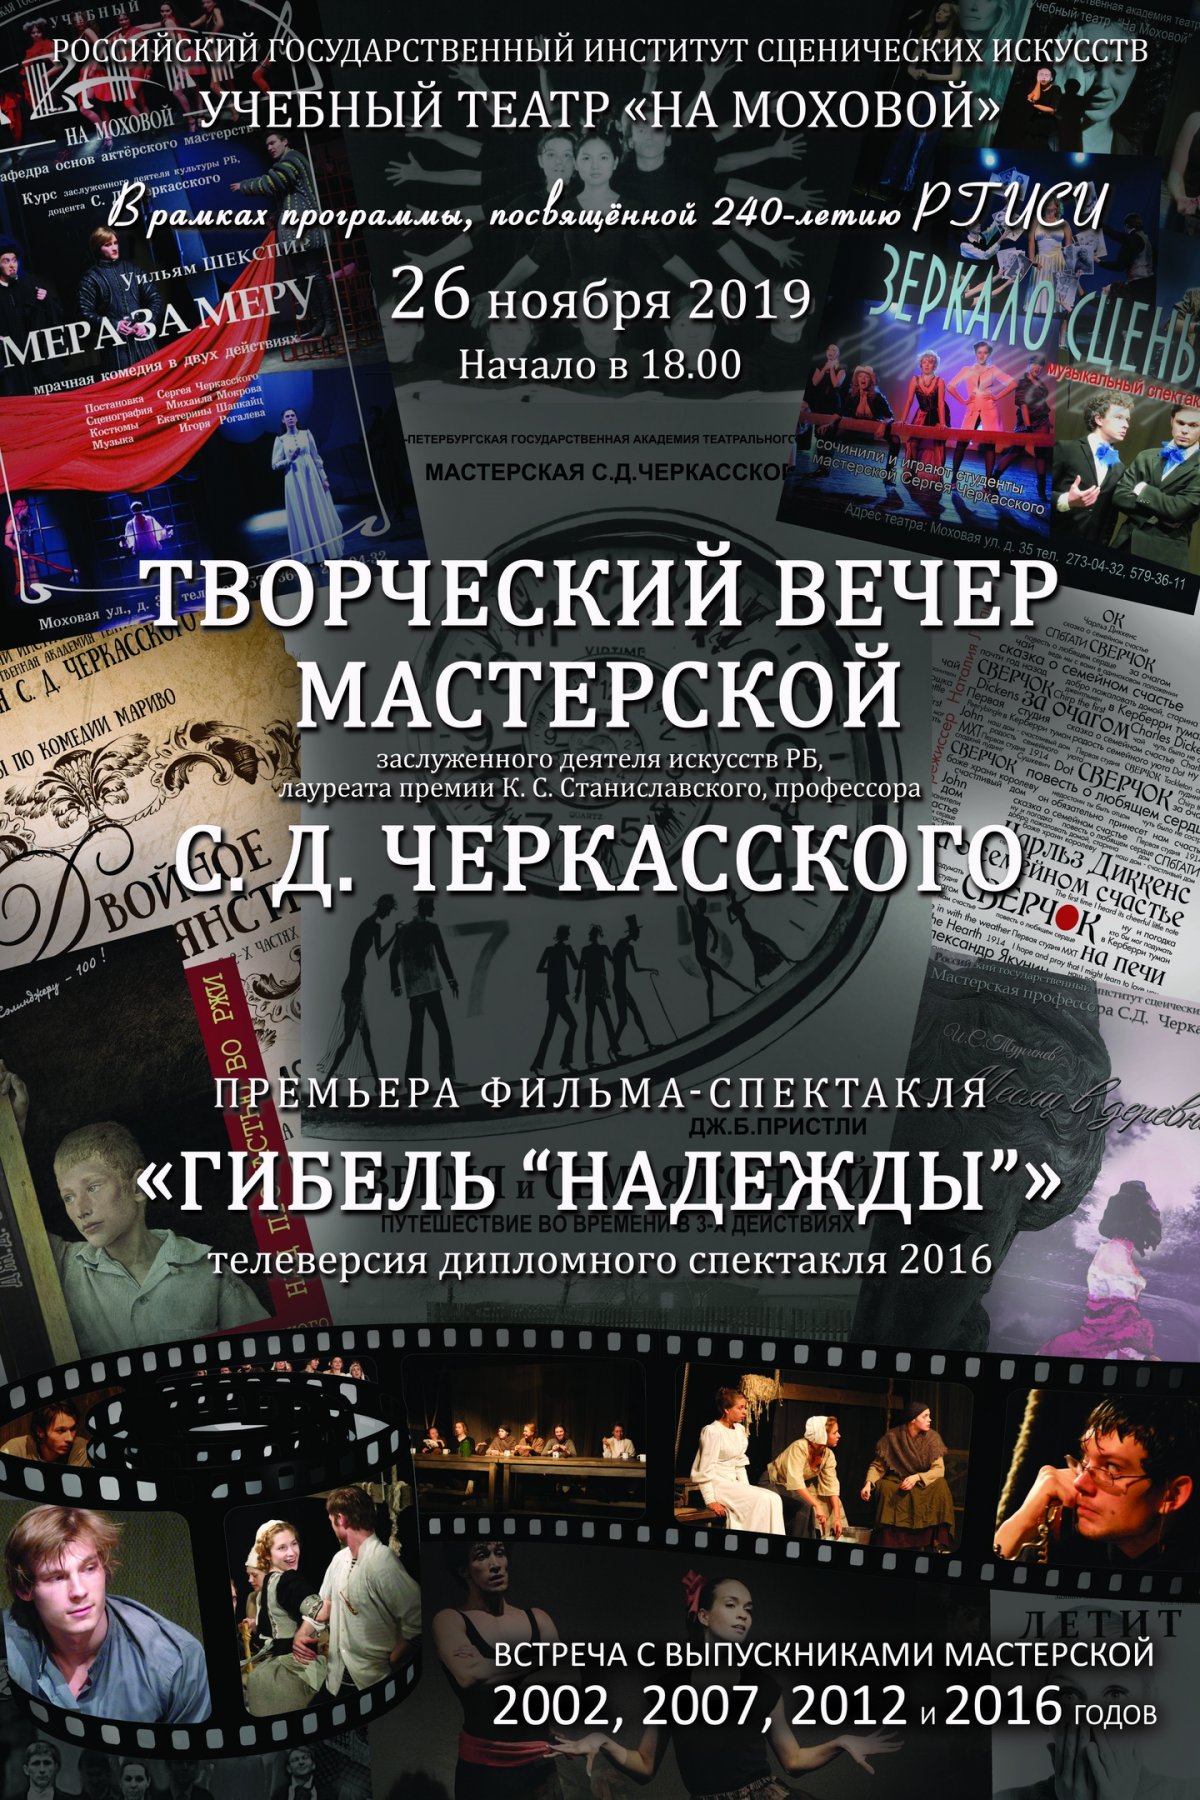 В рамках празднования 240-летия РГИСИ 26 ноября в 18.00 в Учебном театре «На Моховой» состоится Творческий вечер мастерской С.Д. Черкасского.